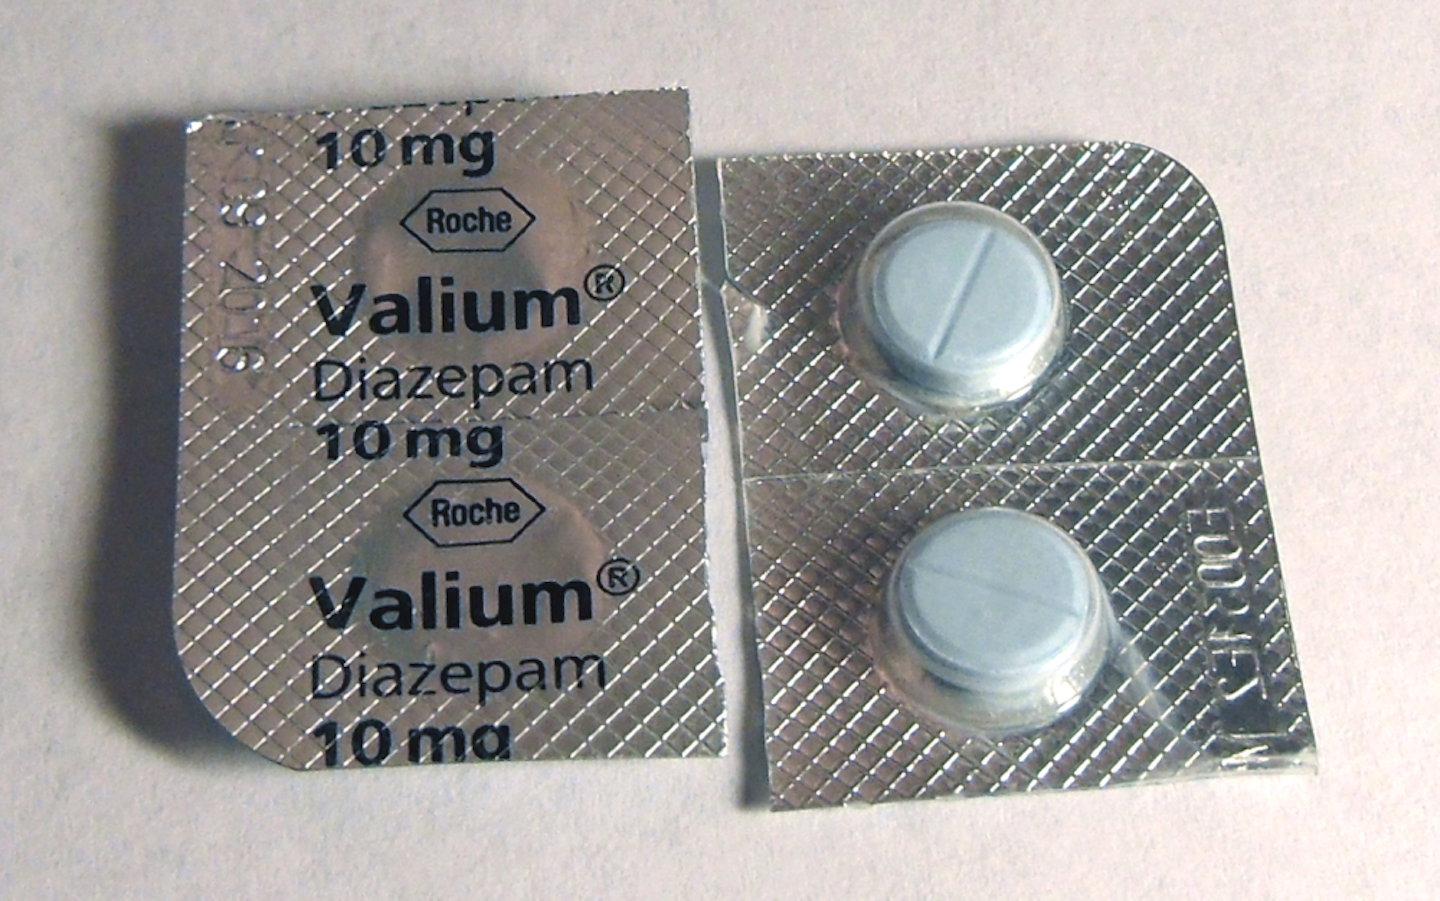 Different milligrams of valium